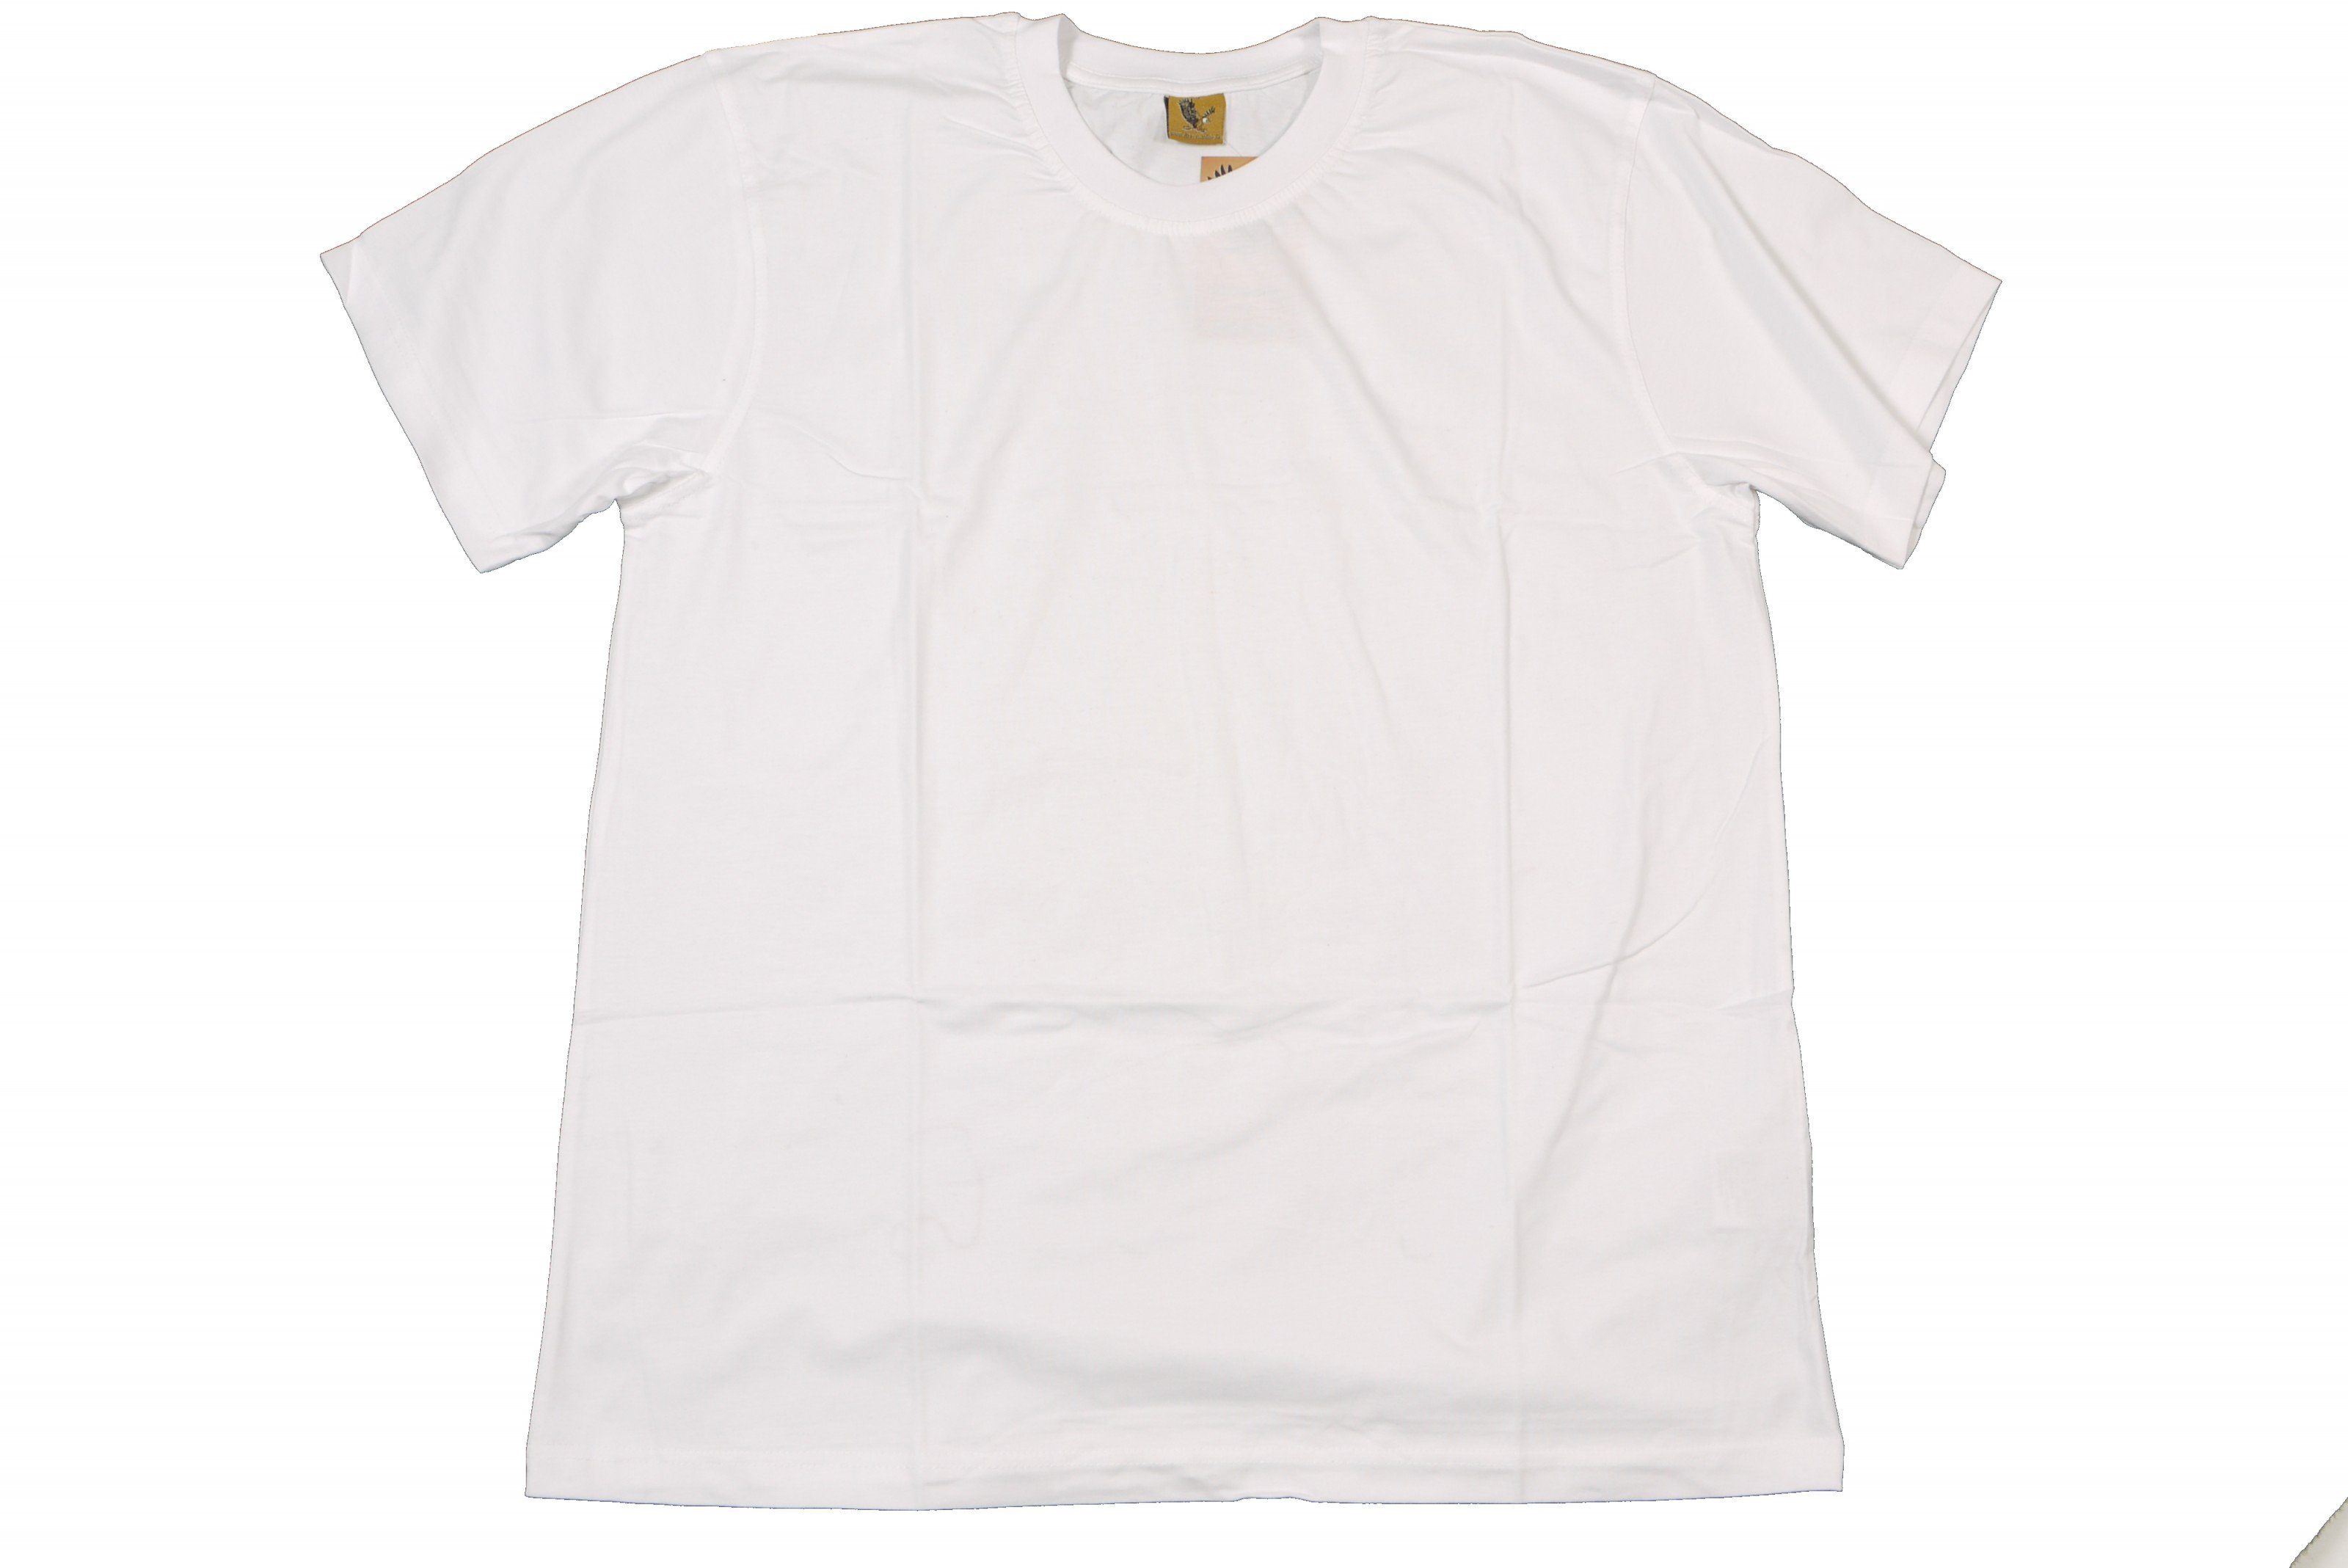 ABRAXAS Rundhalsshirt Rundhals T-Shirt von Abraxas in großen Größen bis 12XL, weiß | Rundhalsshirts